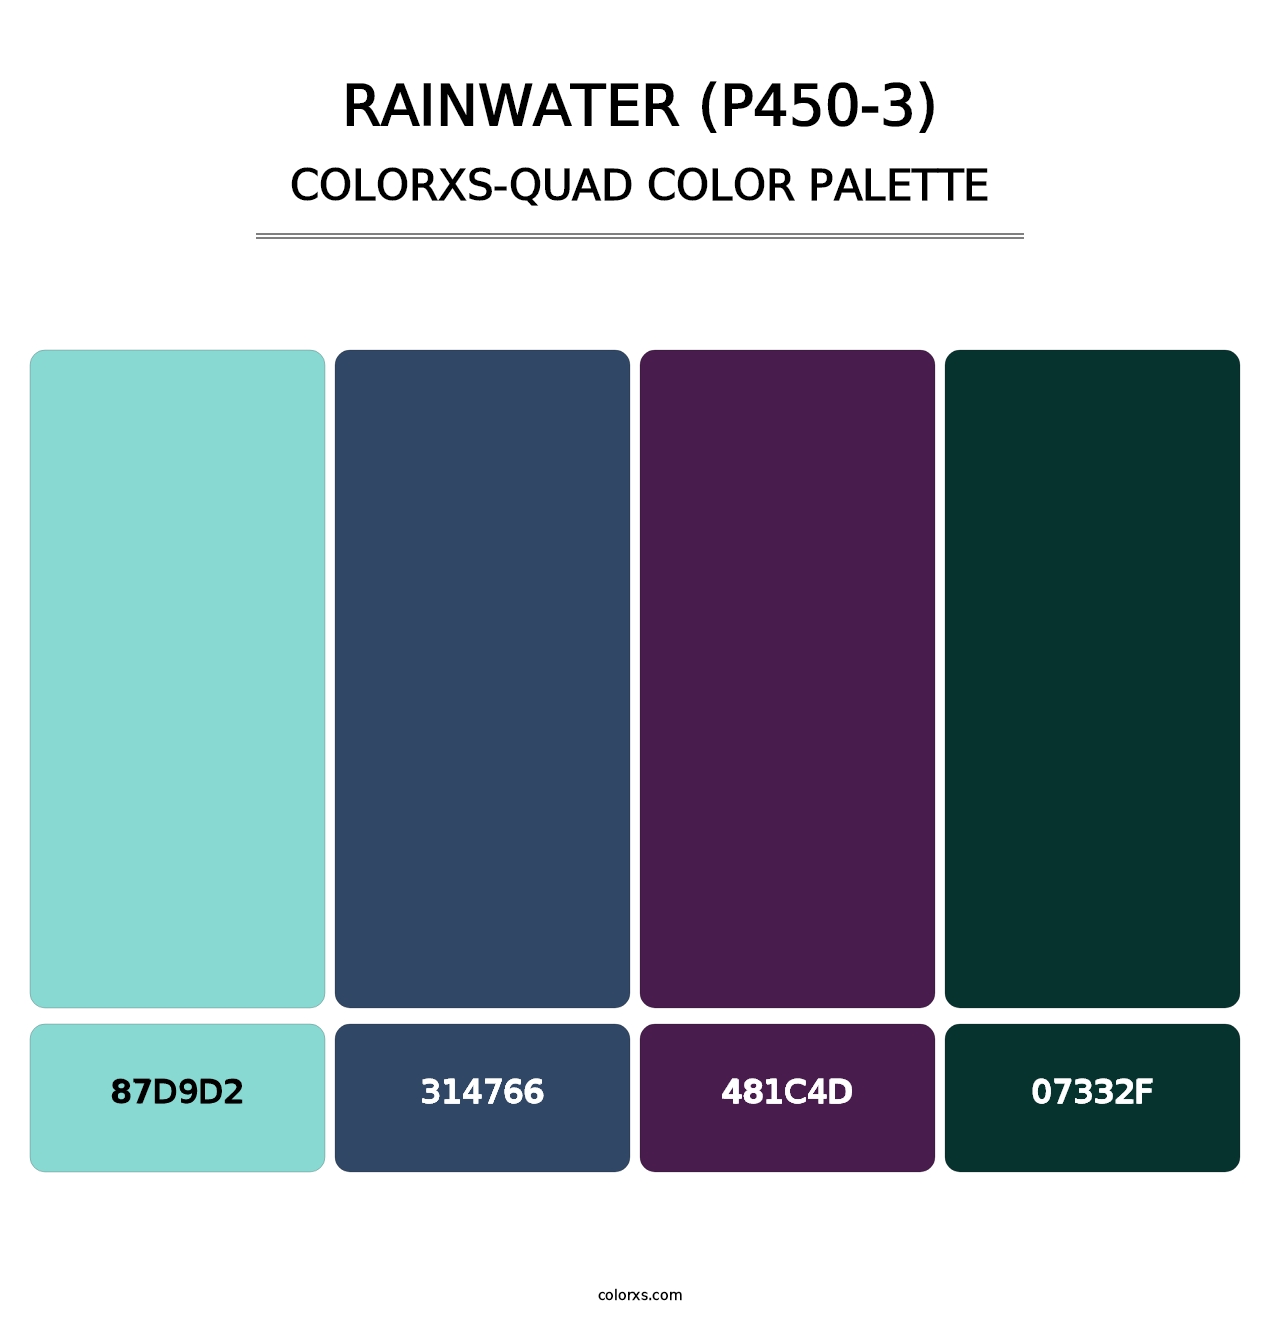 Rainwater (P450-3) - Colorxs Quad Palette